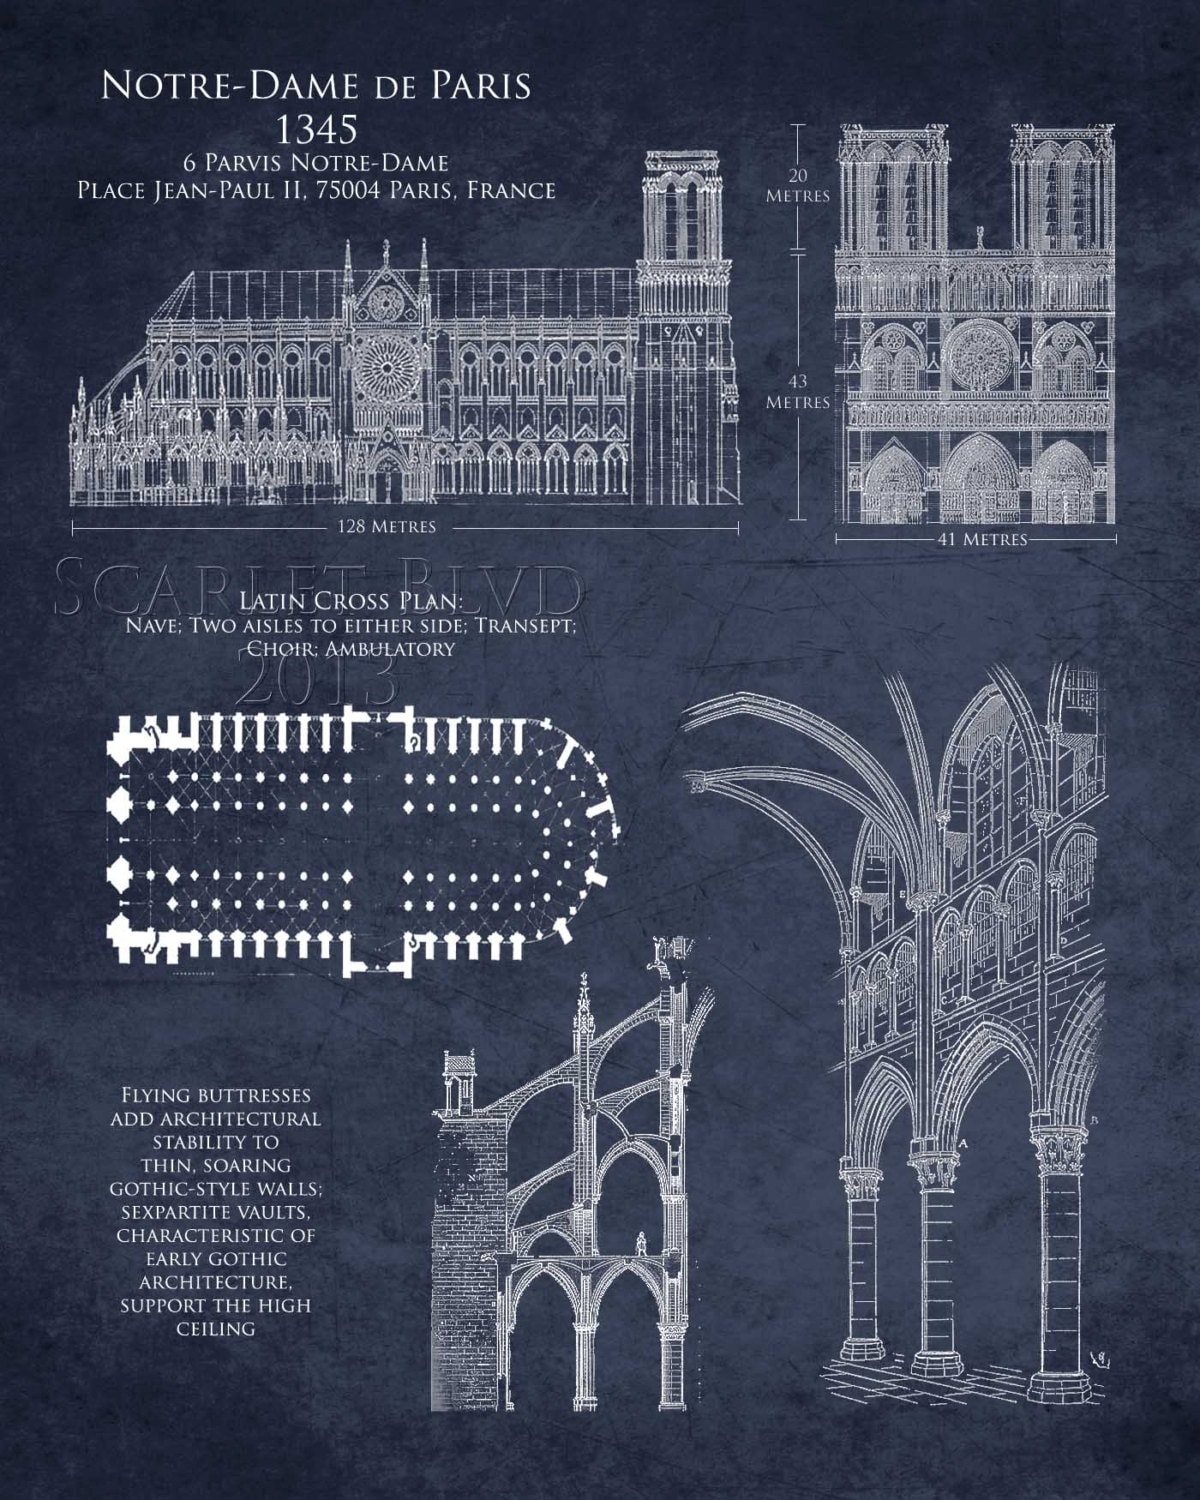 Notre Dame de Paris cathedral blueprint art print by ScarletBlvd